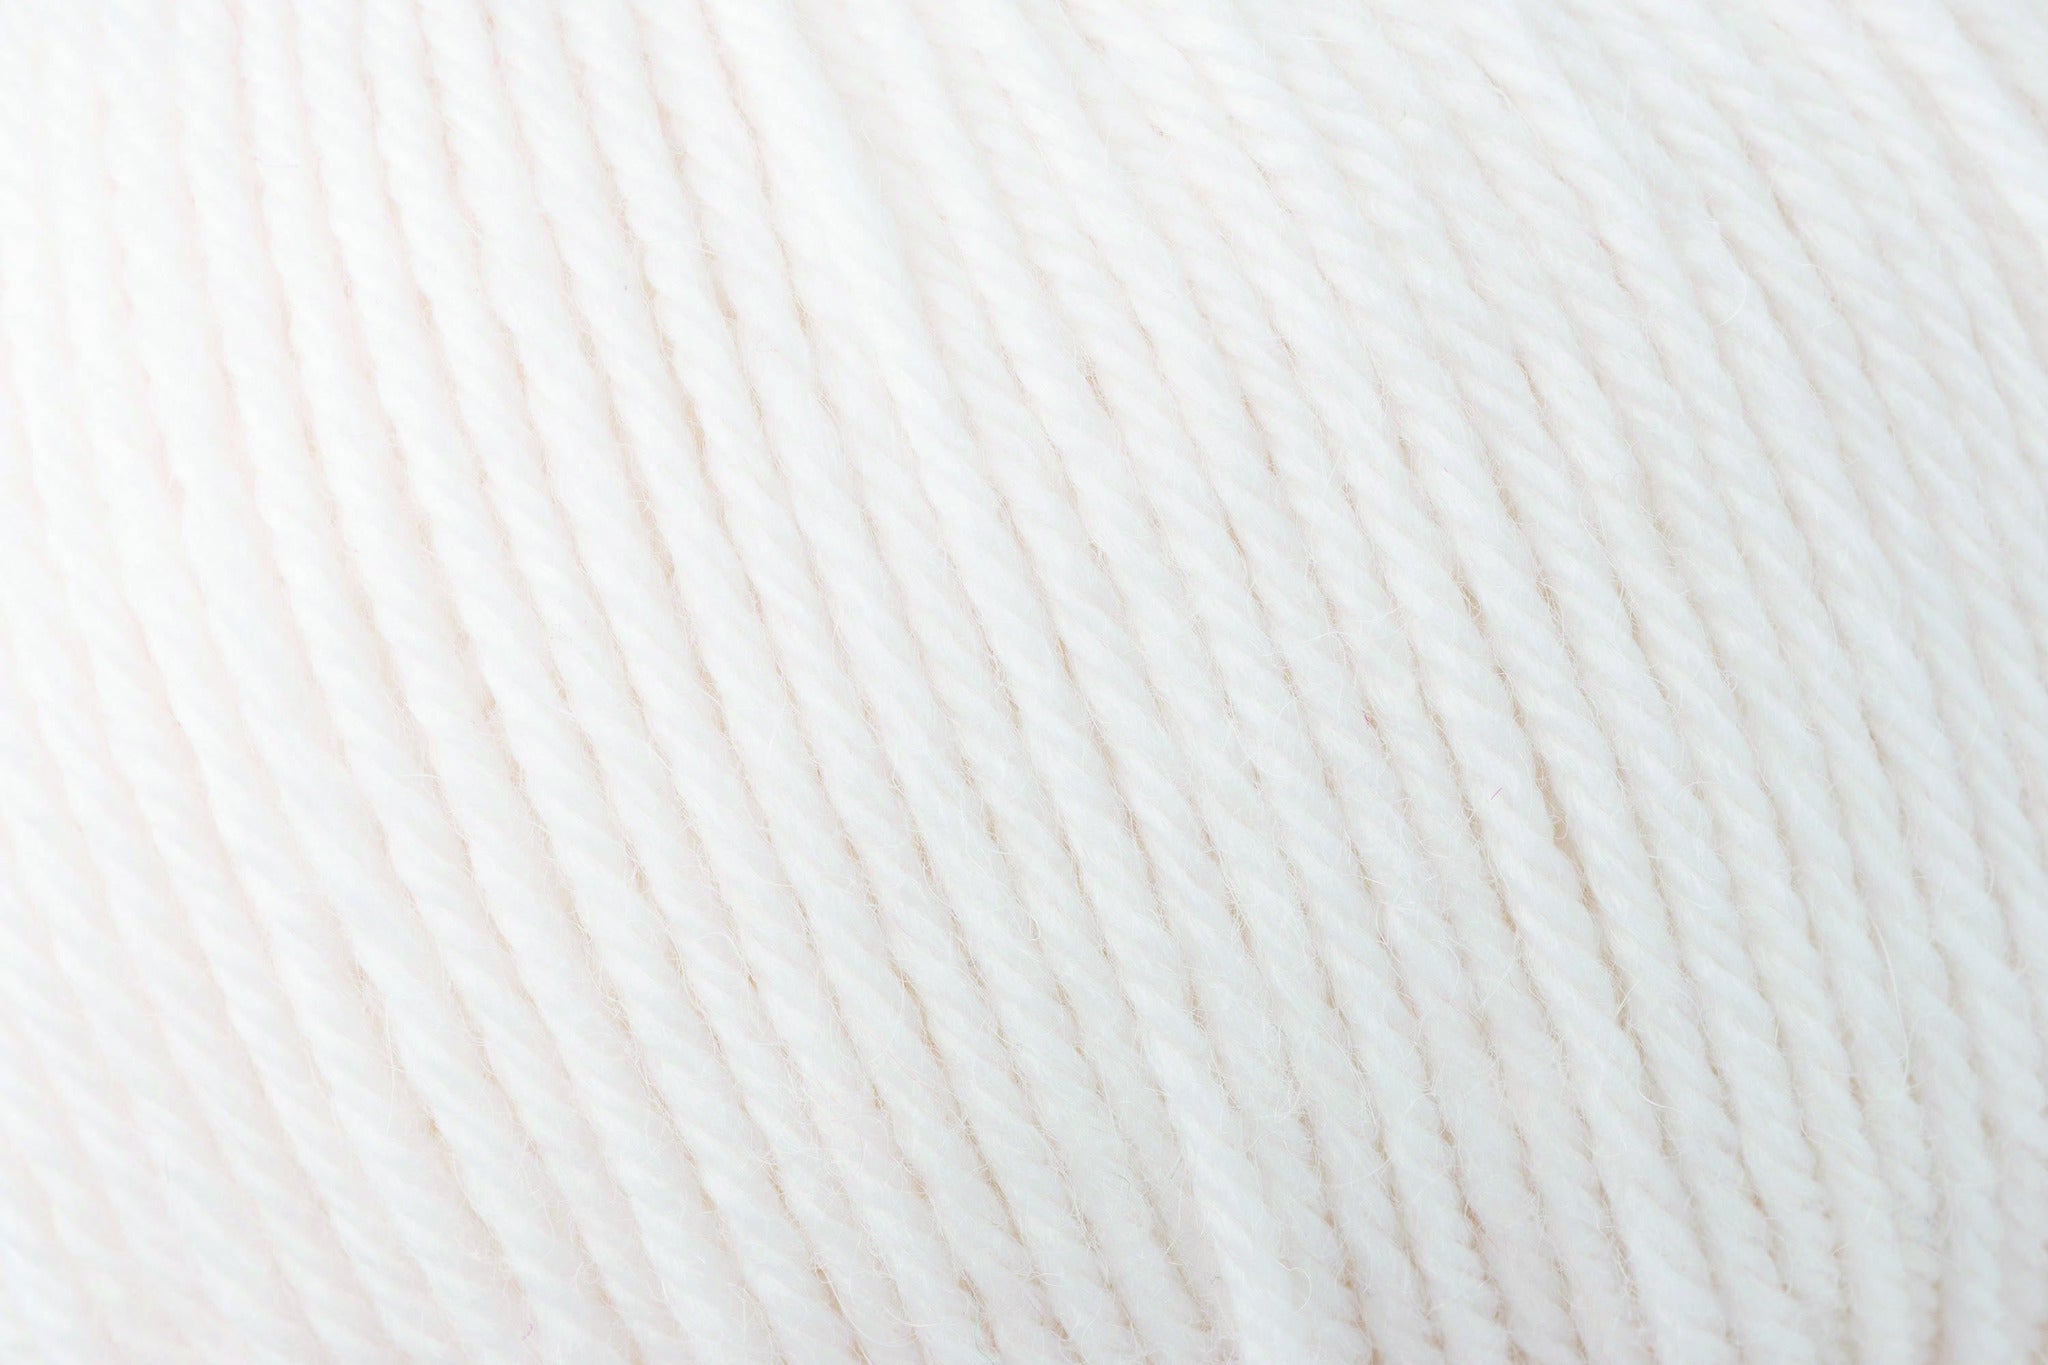 Rowan Alpaca Soft DK in Simply White-201